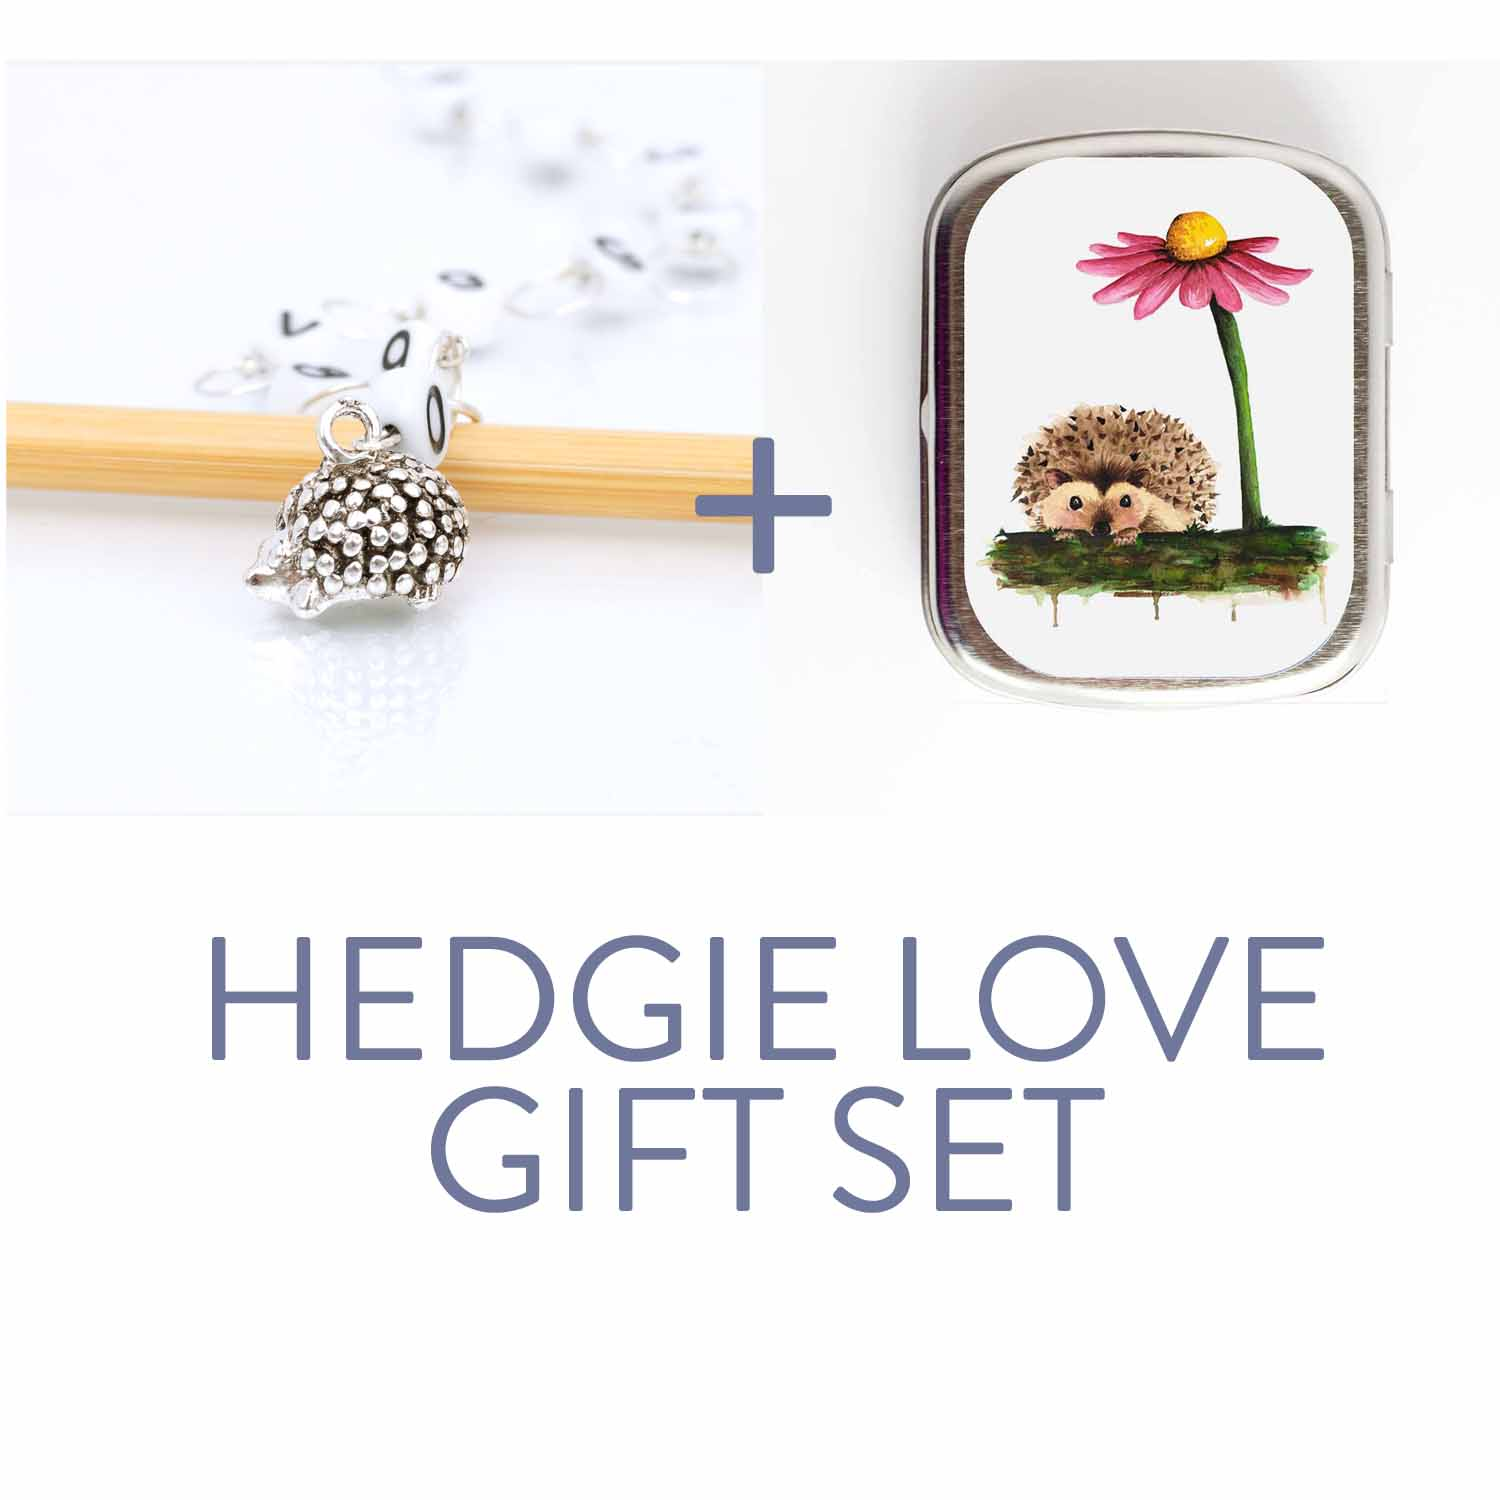 Hedgehog Love Gift Set